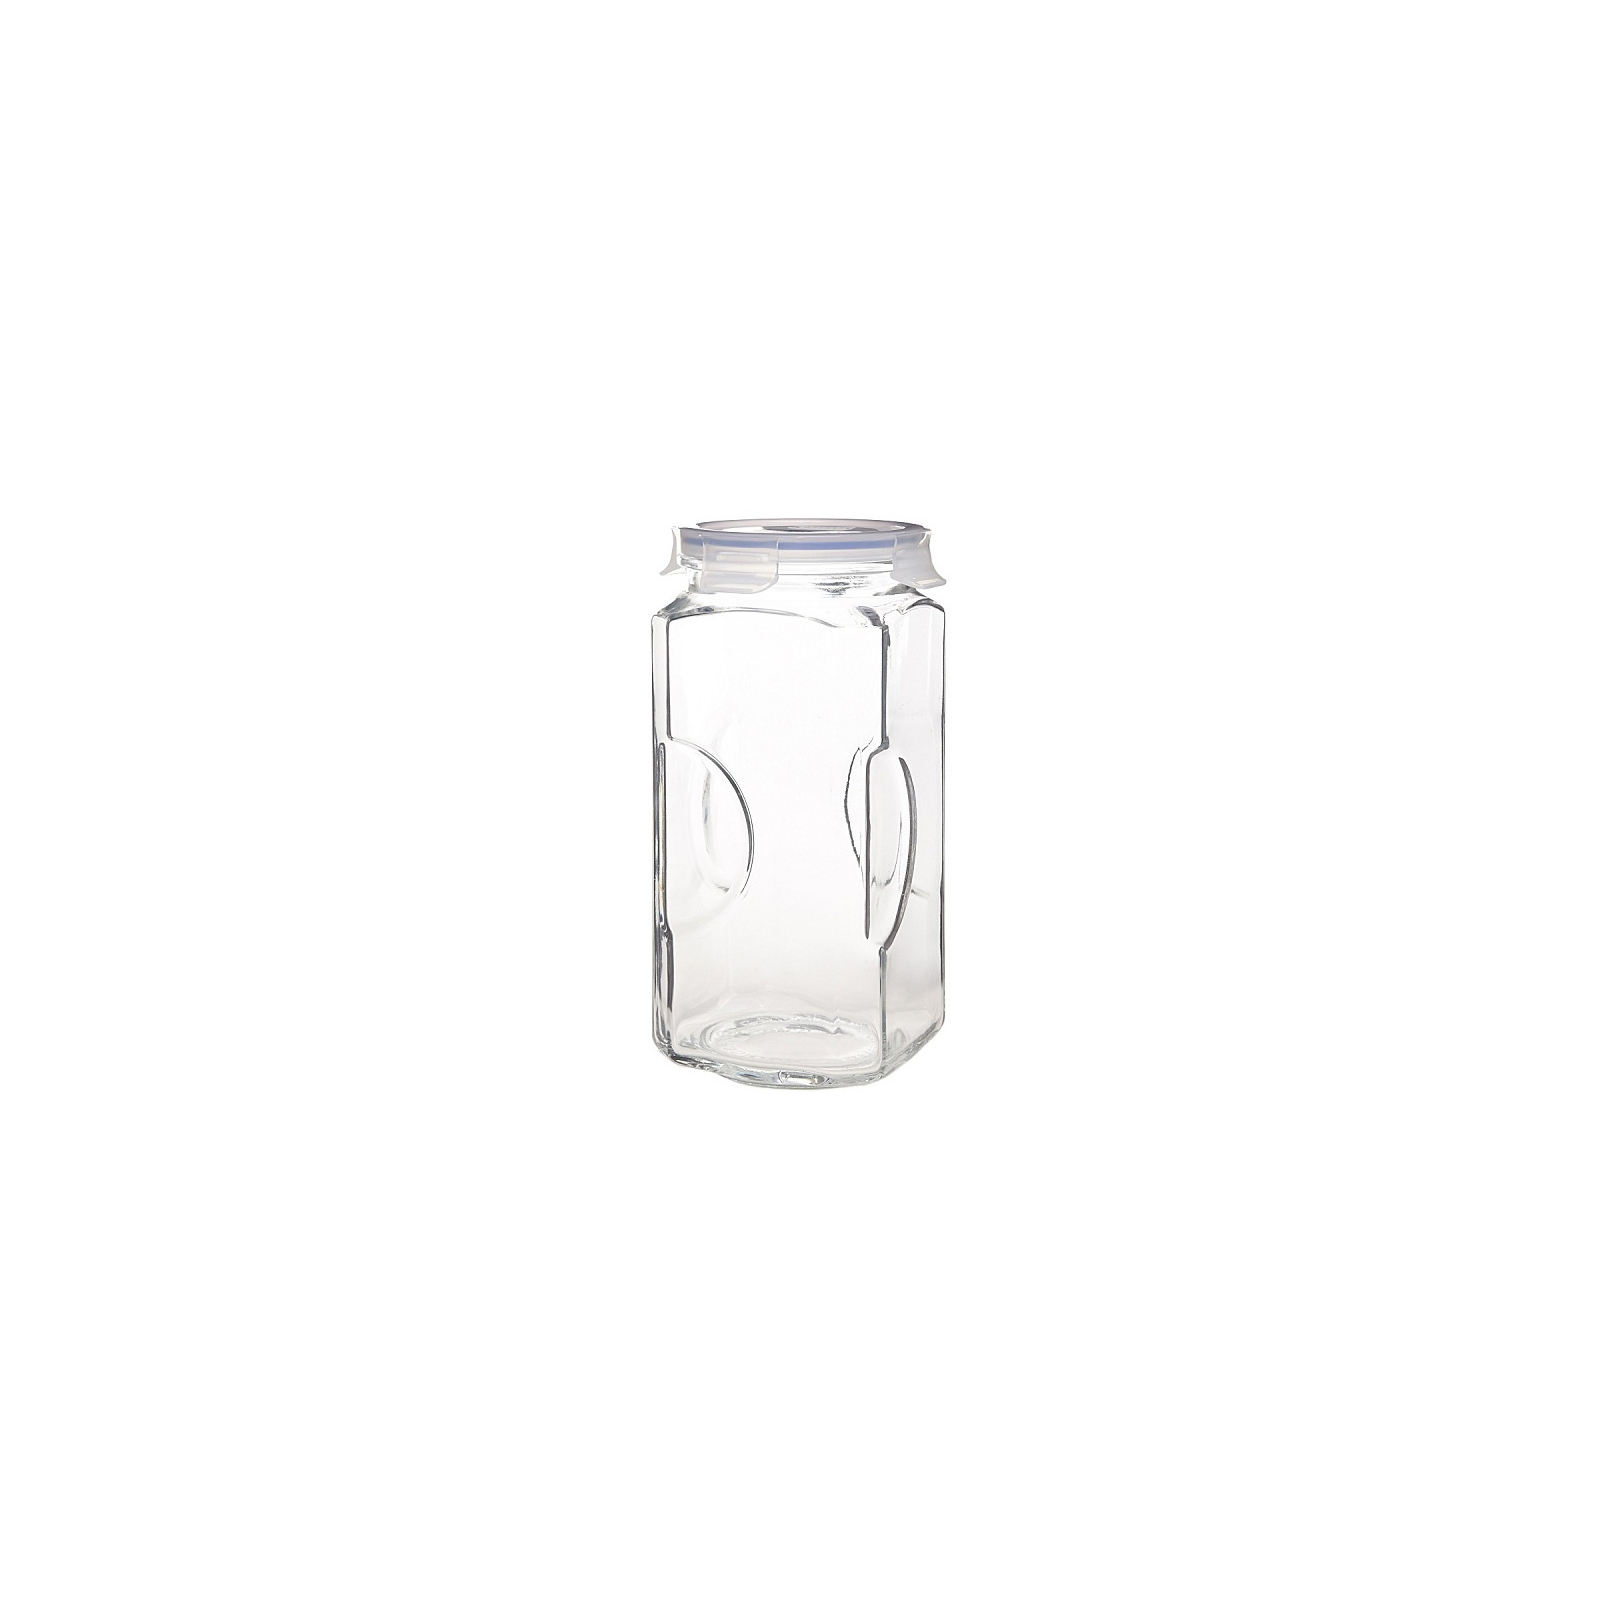 Емкость для сыпучих продуктов Glasslock 3 л (IP593ne)